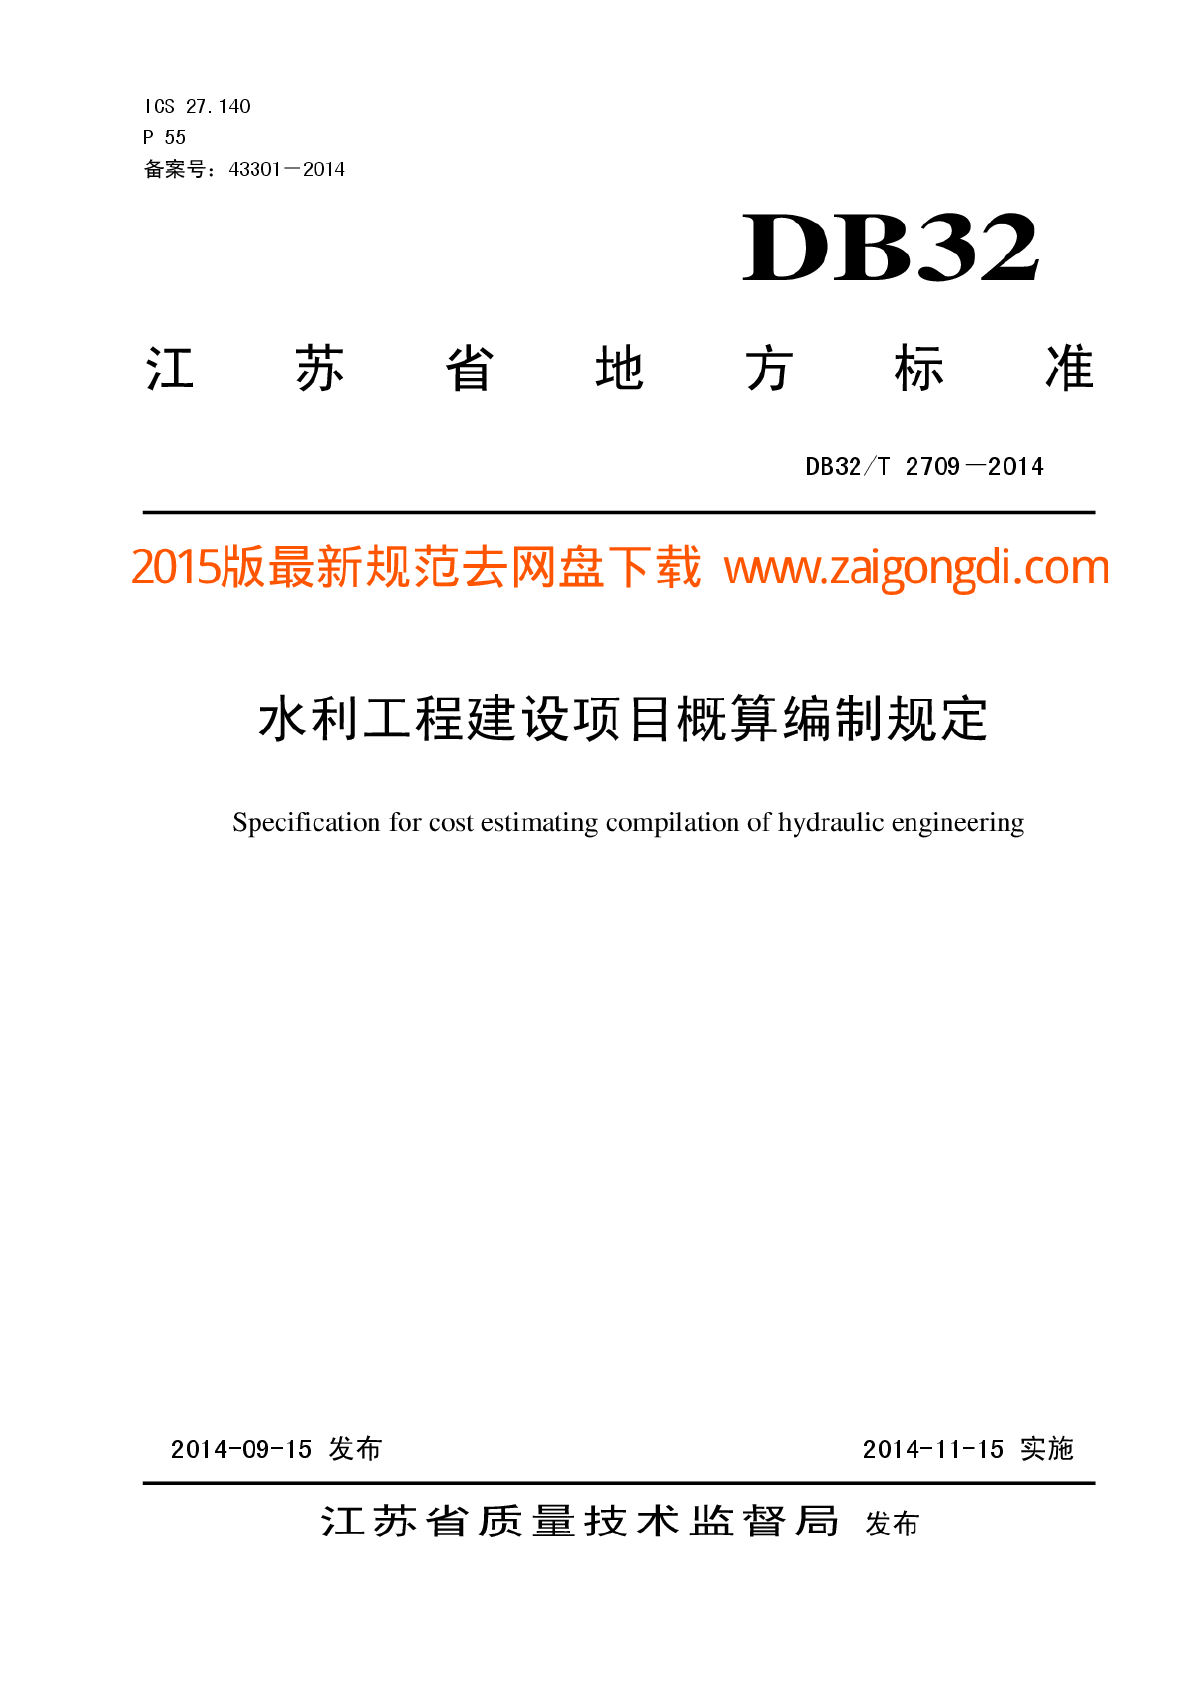 DB32T 2709-2014 水利工程概算编制规定